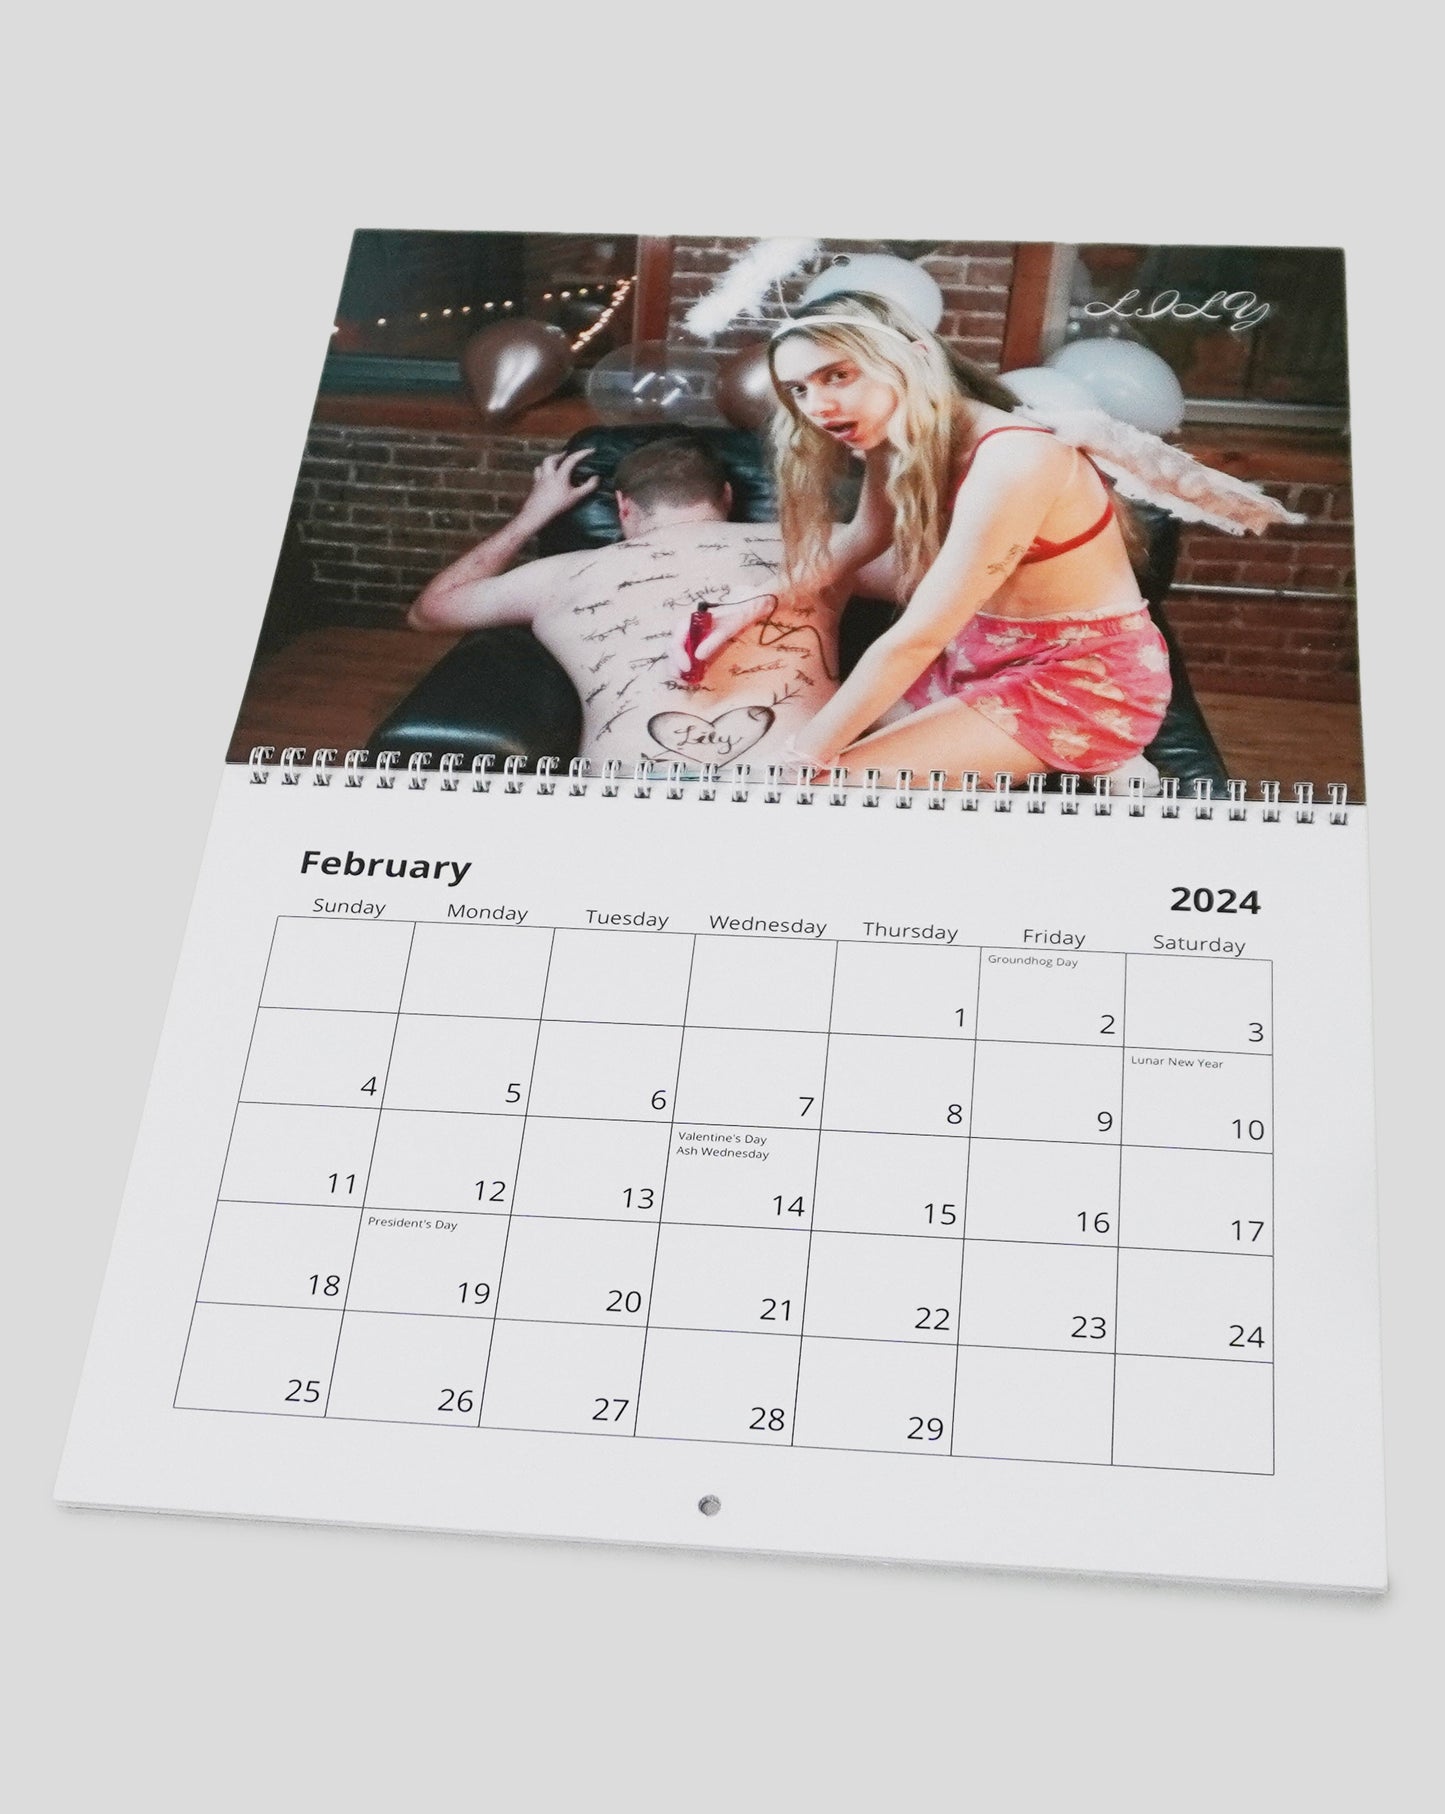 Dirty - Taryn Segal Calendar